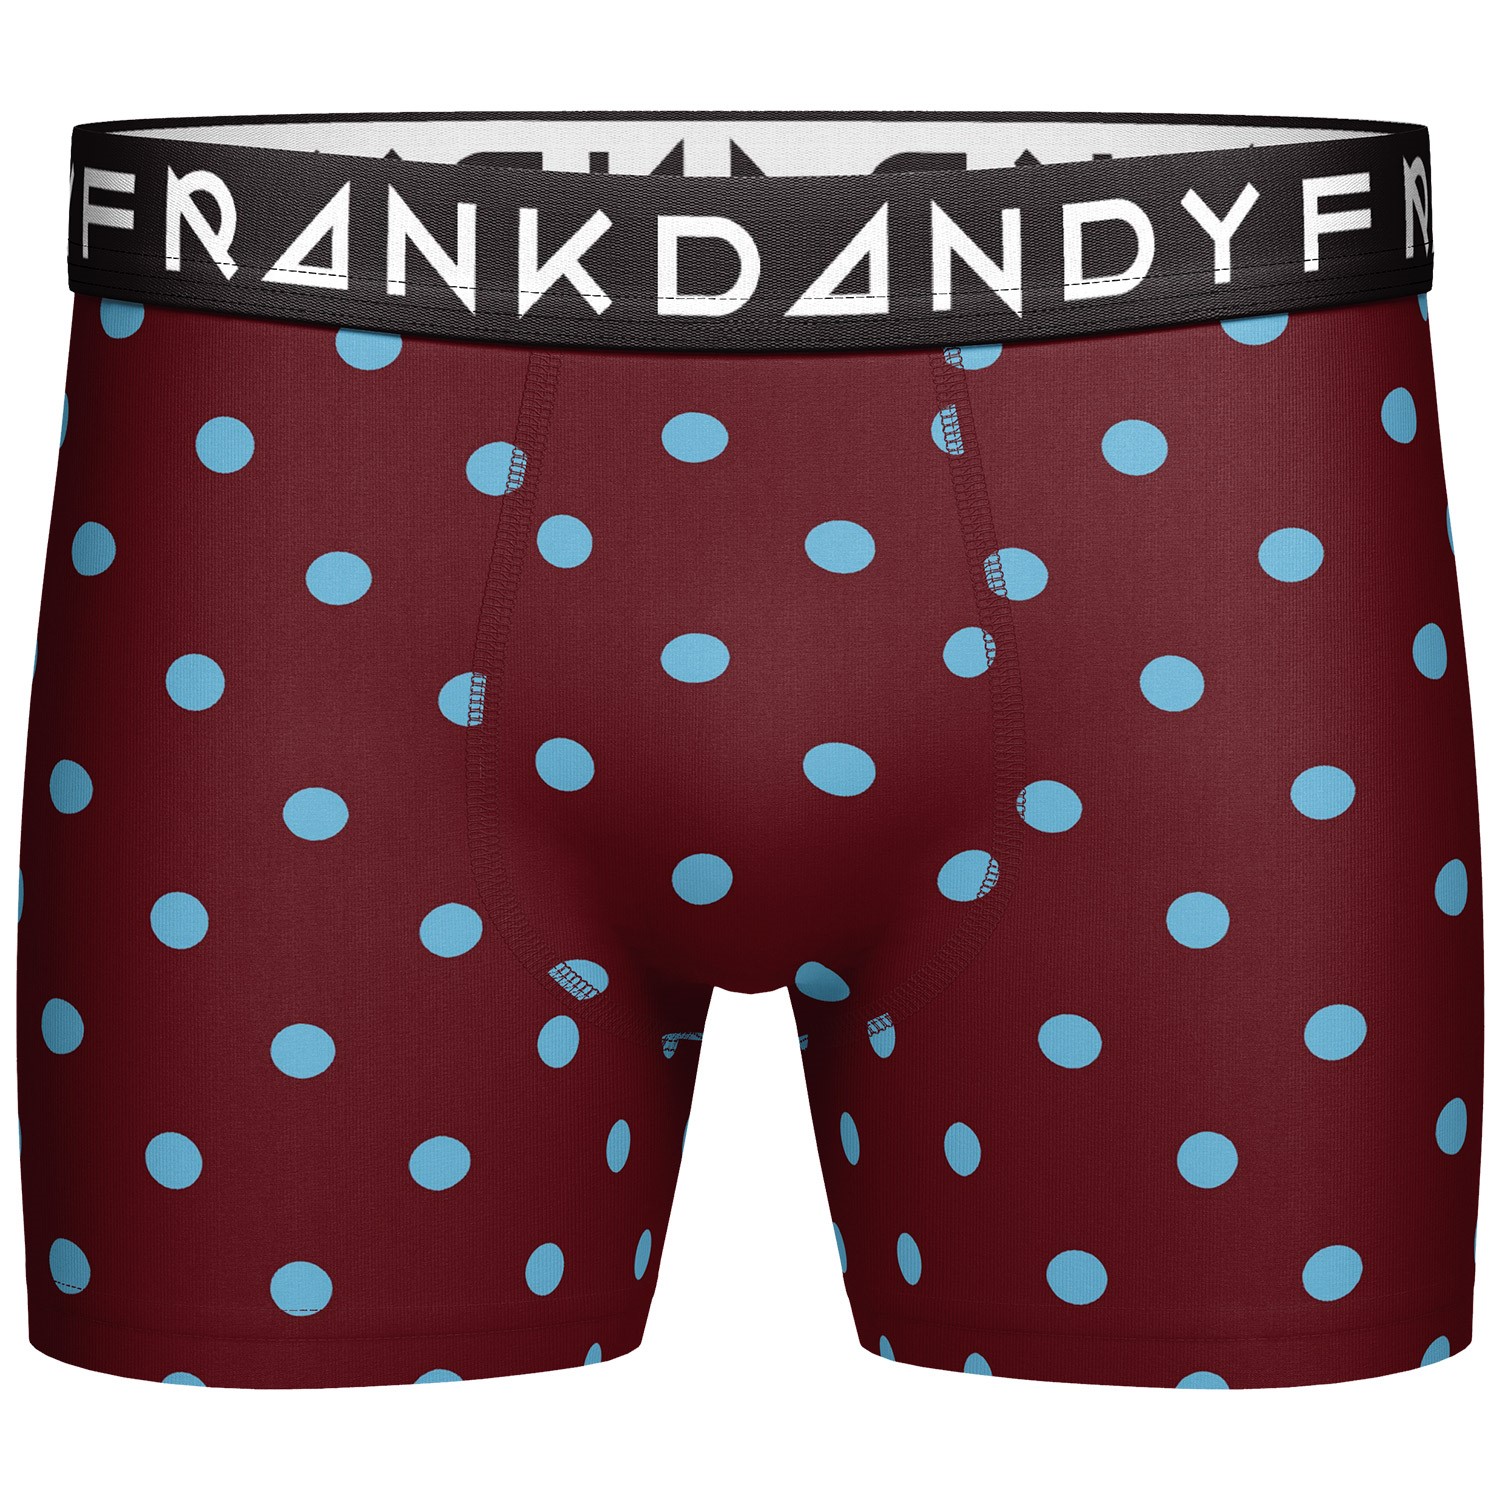 Frank Dandy Printed Boxer